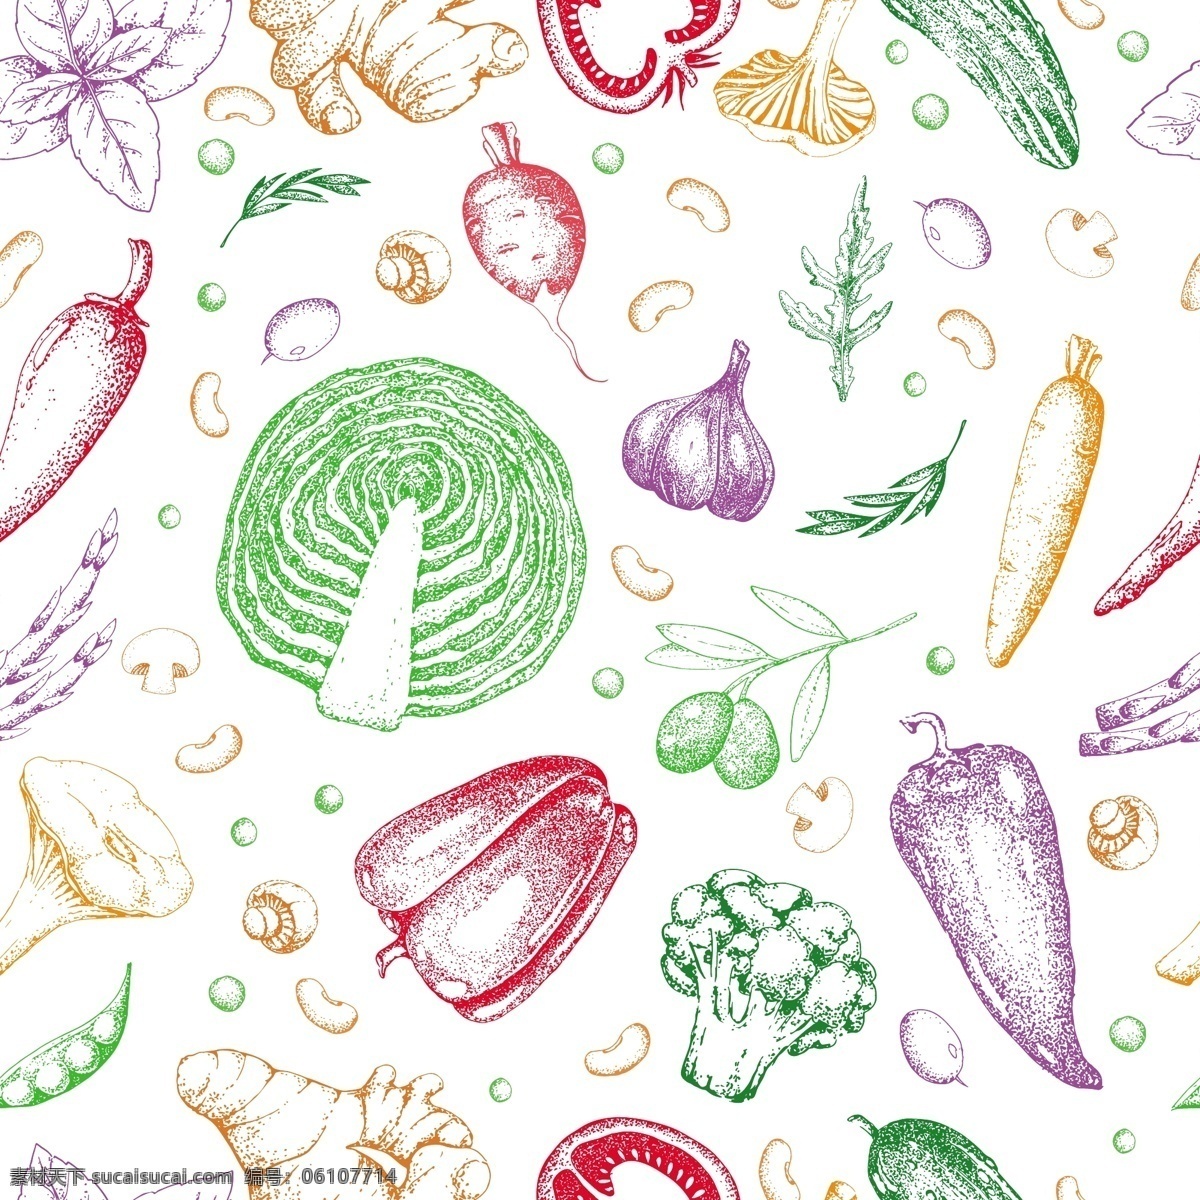 水彩 手绘 蔬菜 背景 矢量 彩色 瓜果 萝卜 平面素材 设计素材 矢量素材 西兰花